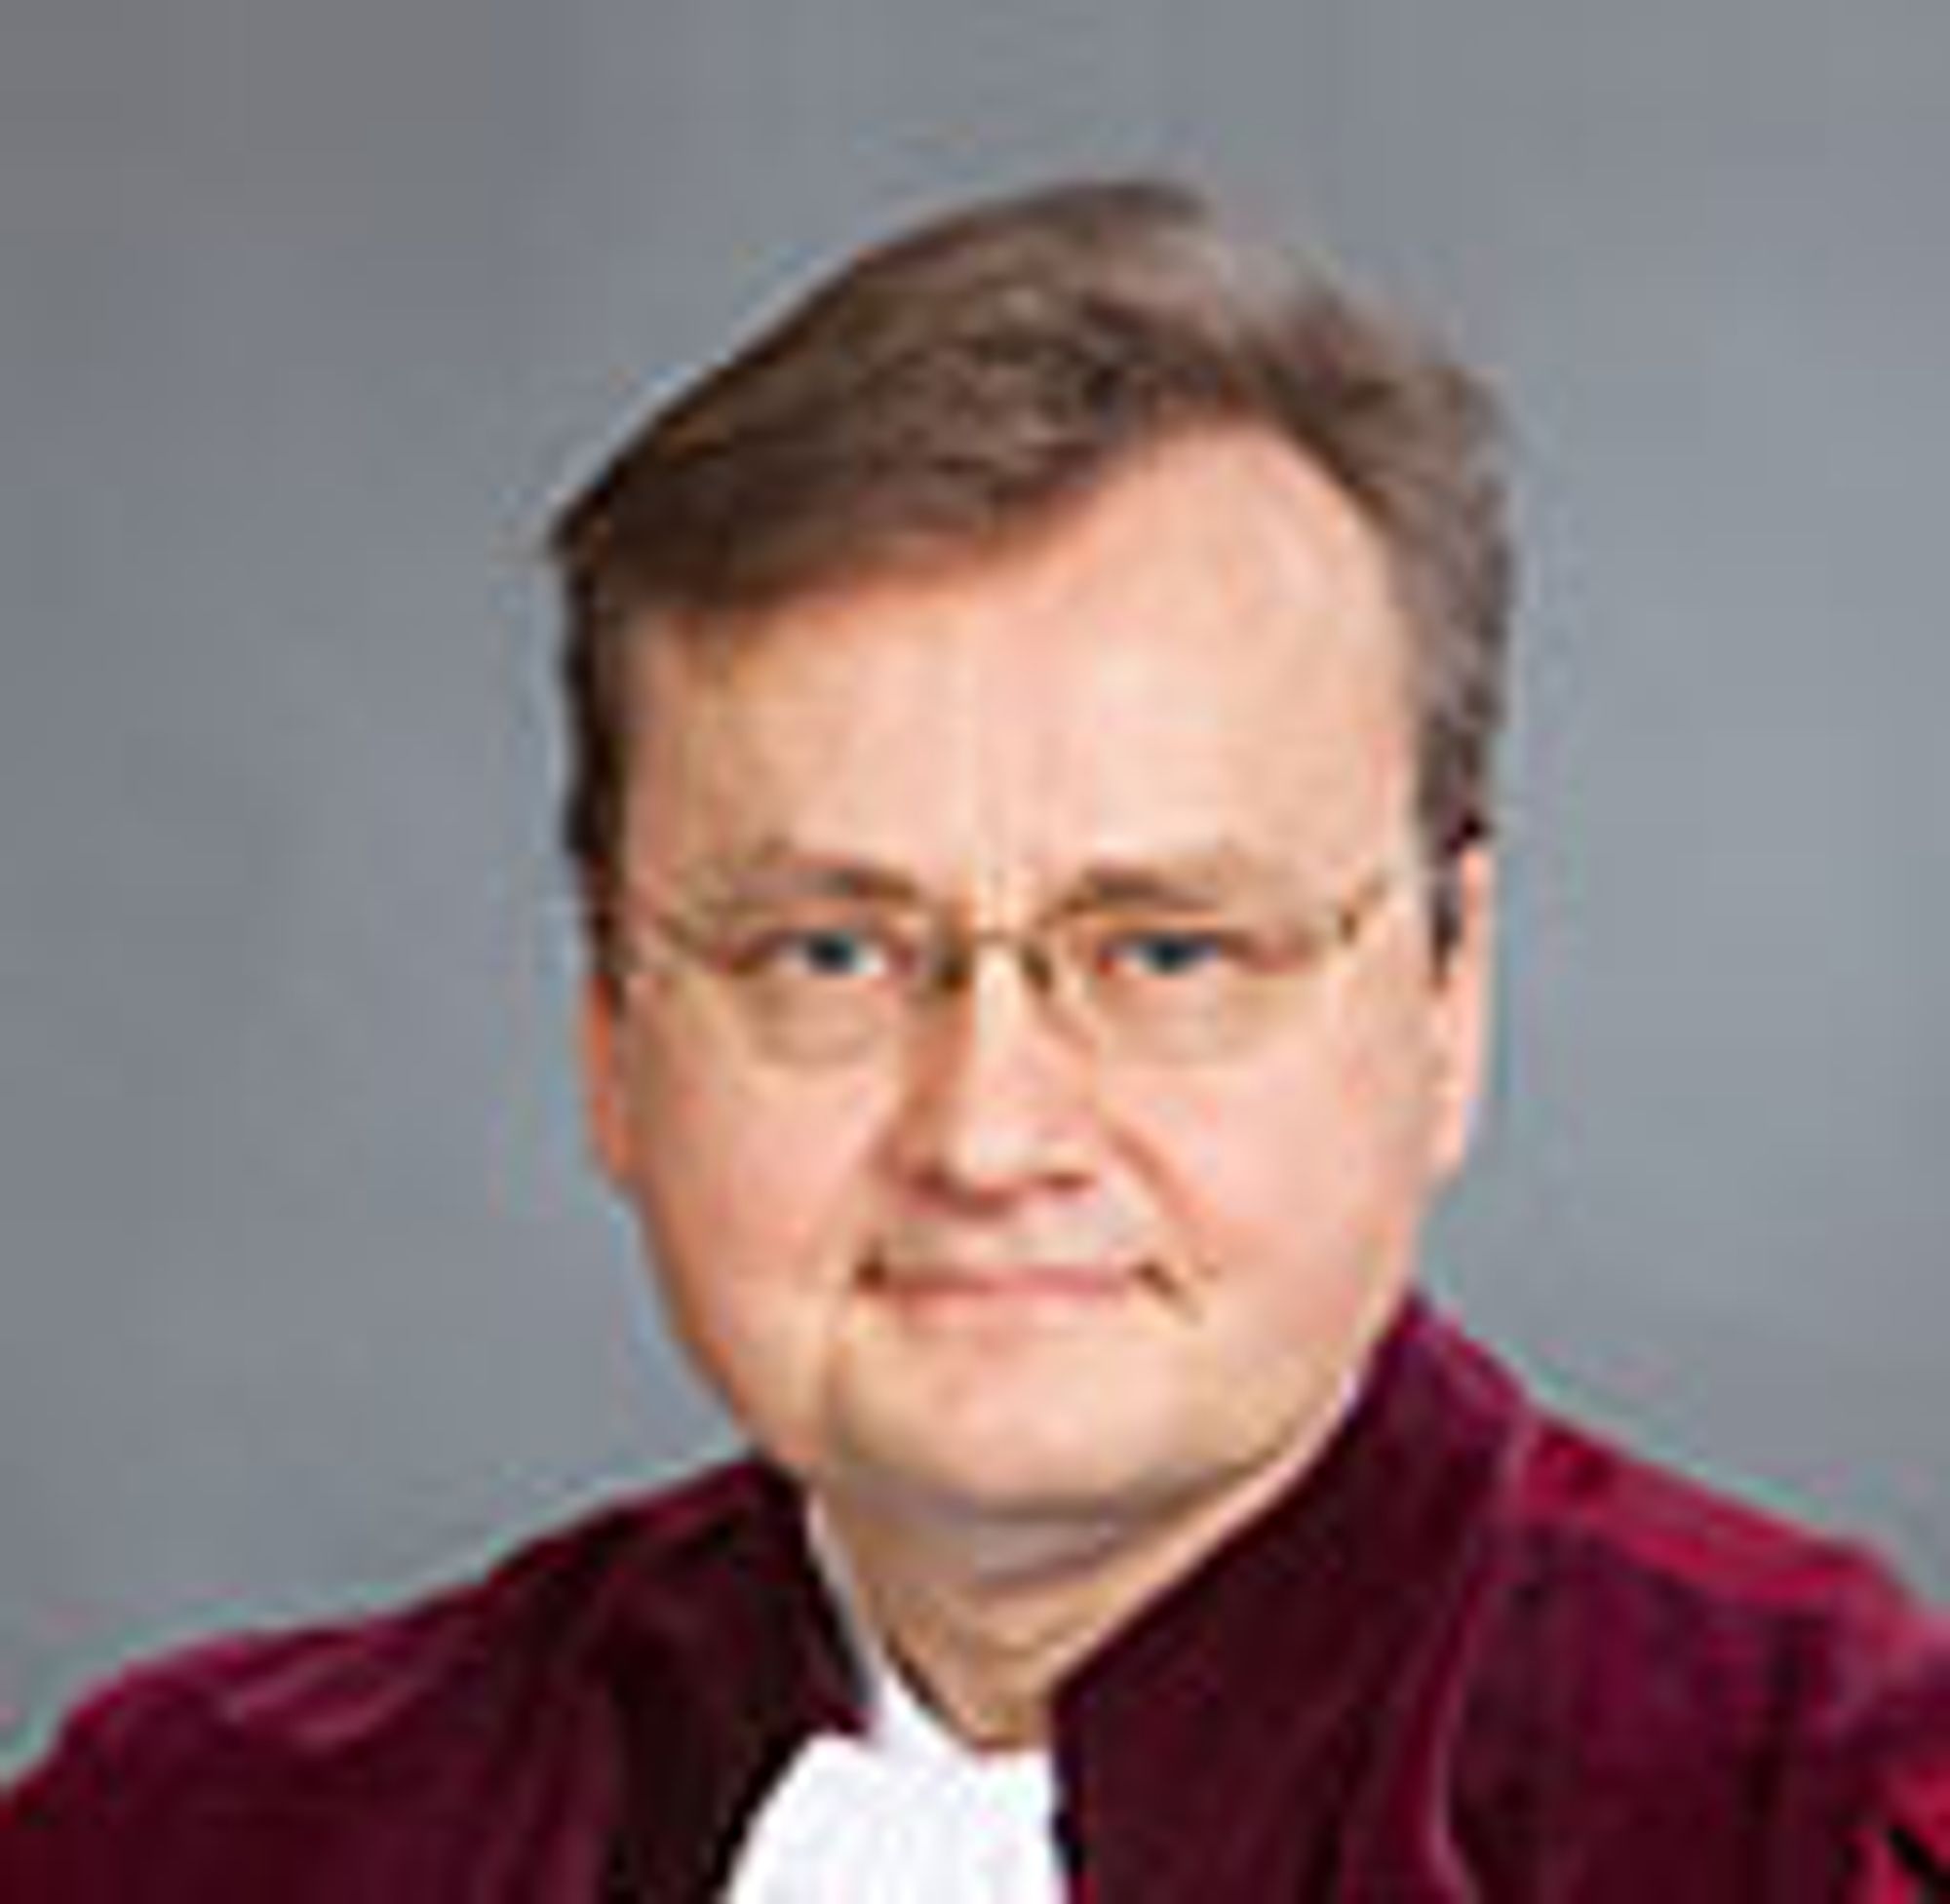 Niilo Jääskinen har vært generaladvokat ved EU-domstolen siden oktober 2009.